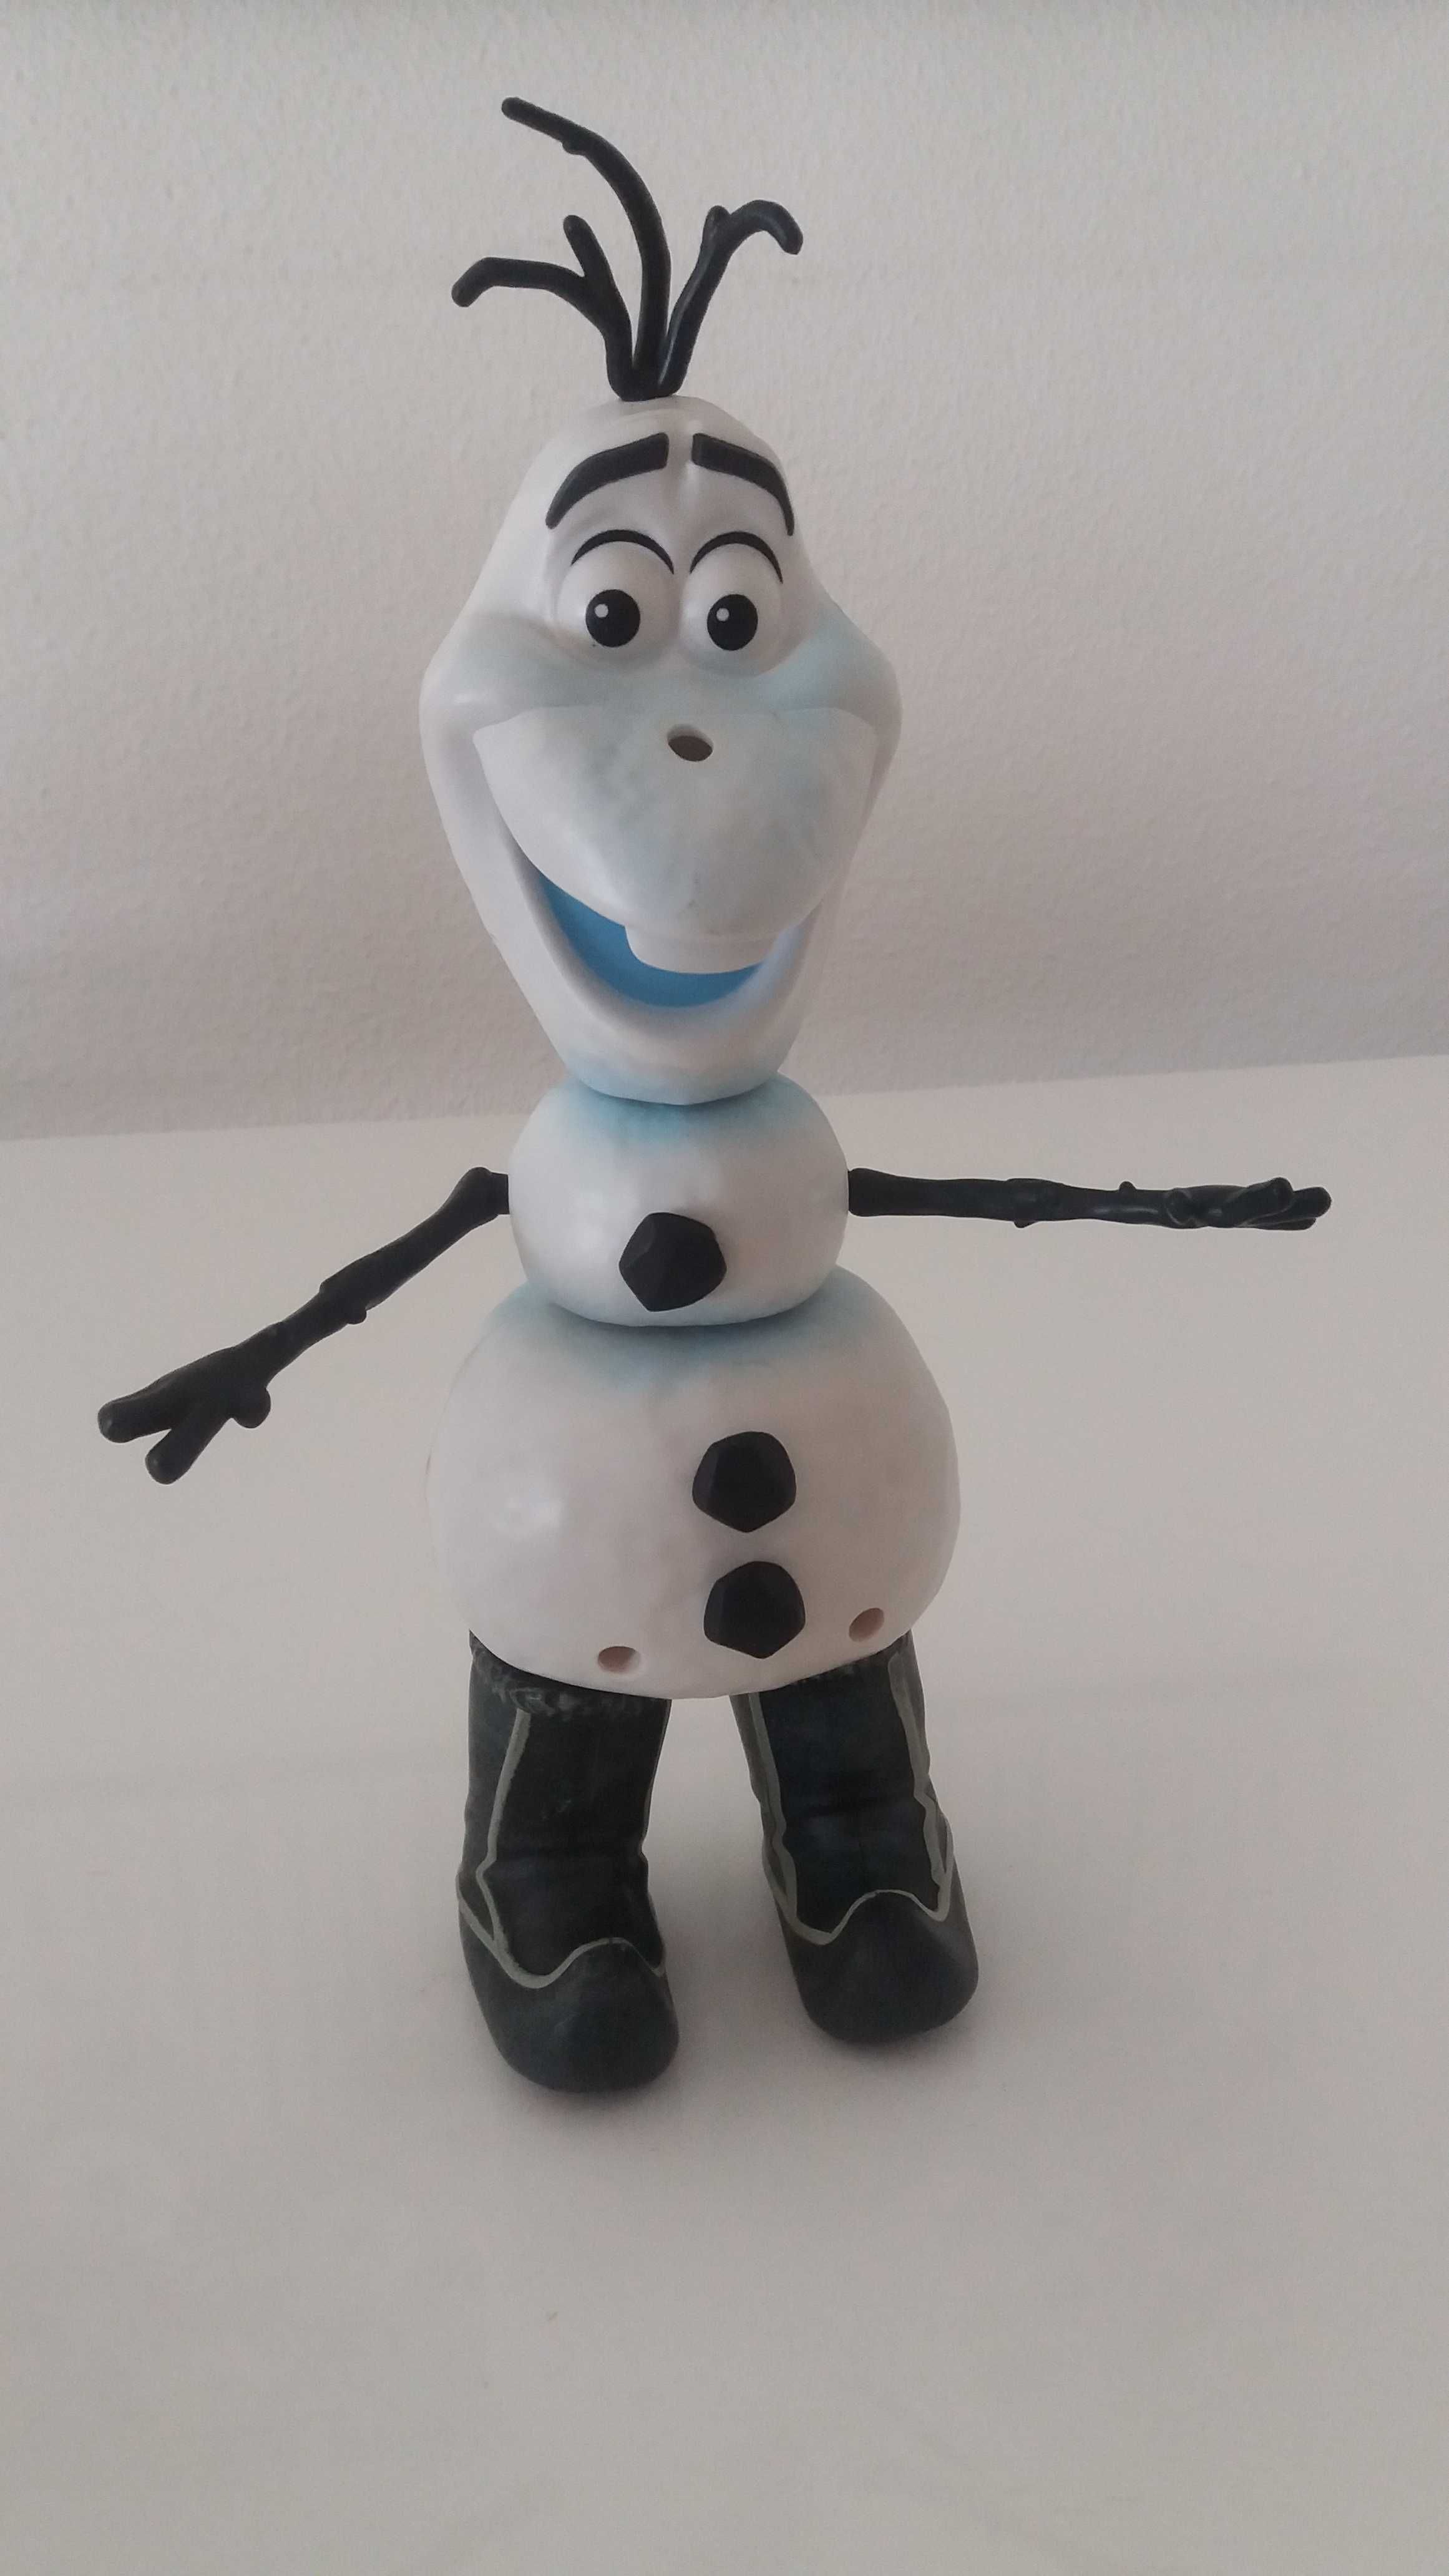 Boneco de Neve "Olaf"